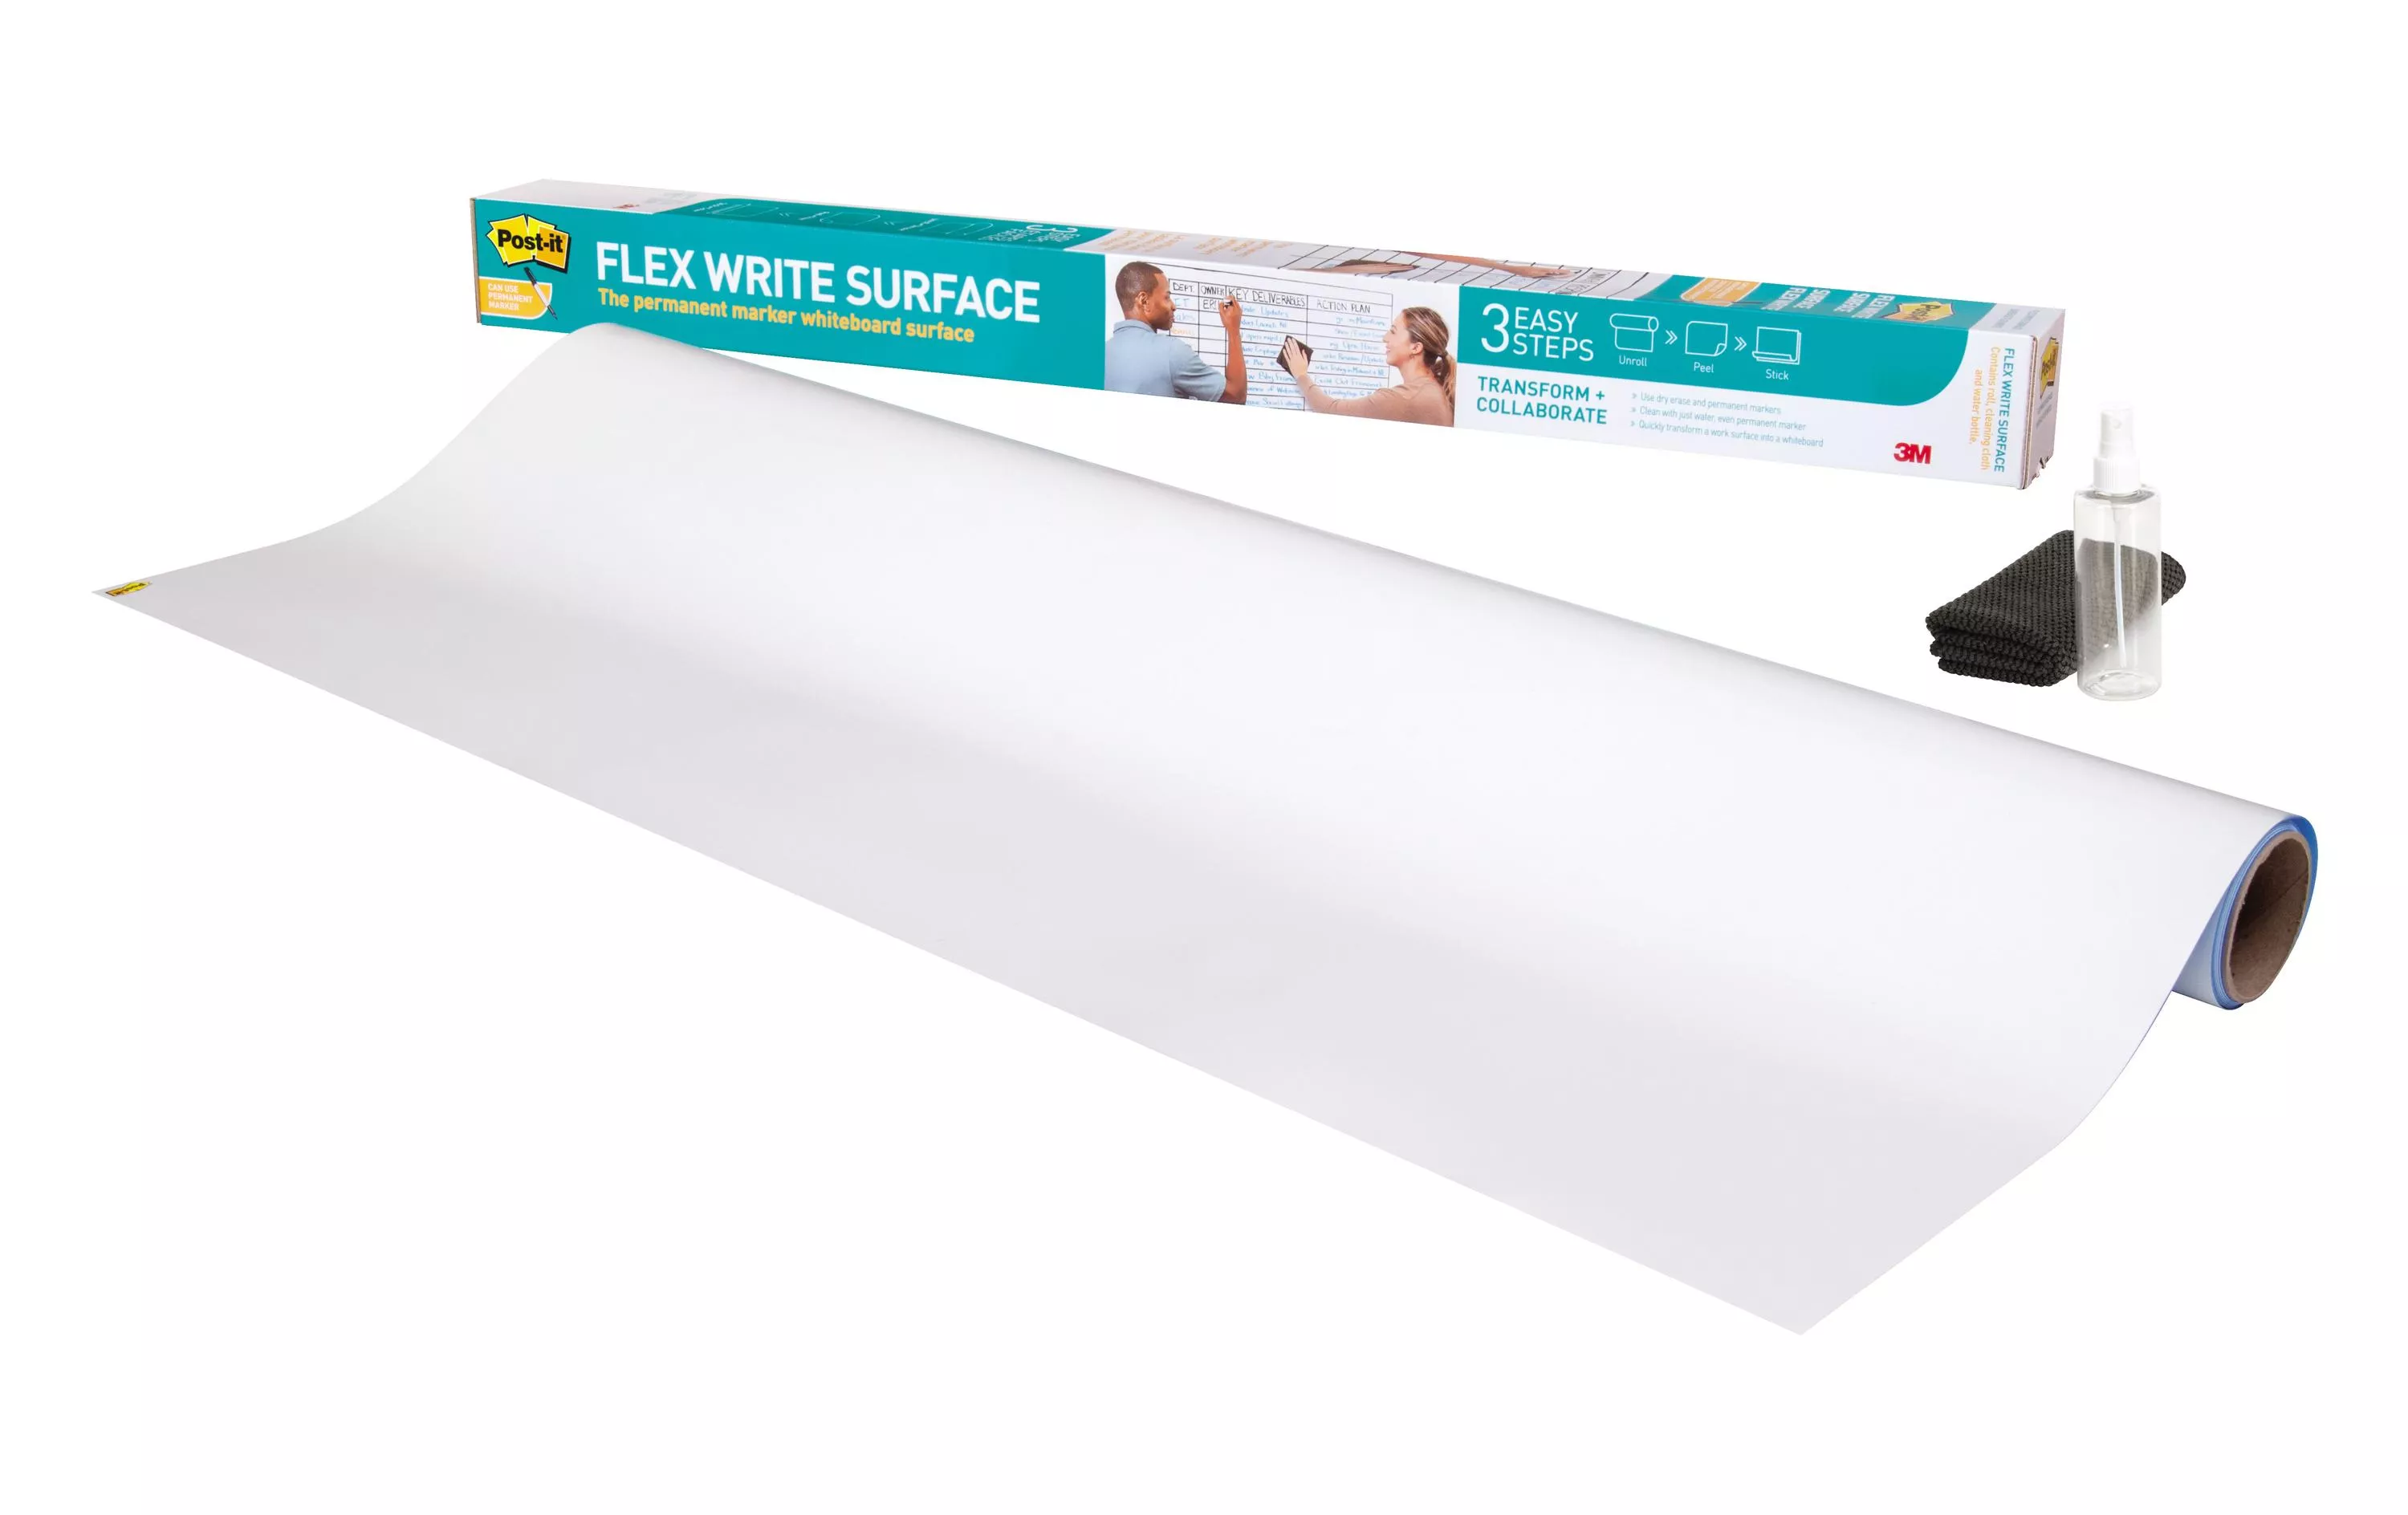 Feuille pour tableau blanc Post-it Flex Write 91.4 x 121.9 cm, 1 rouleau